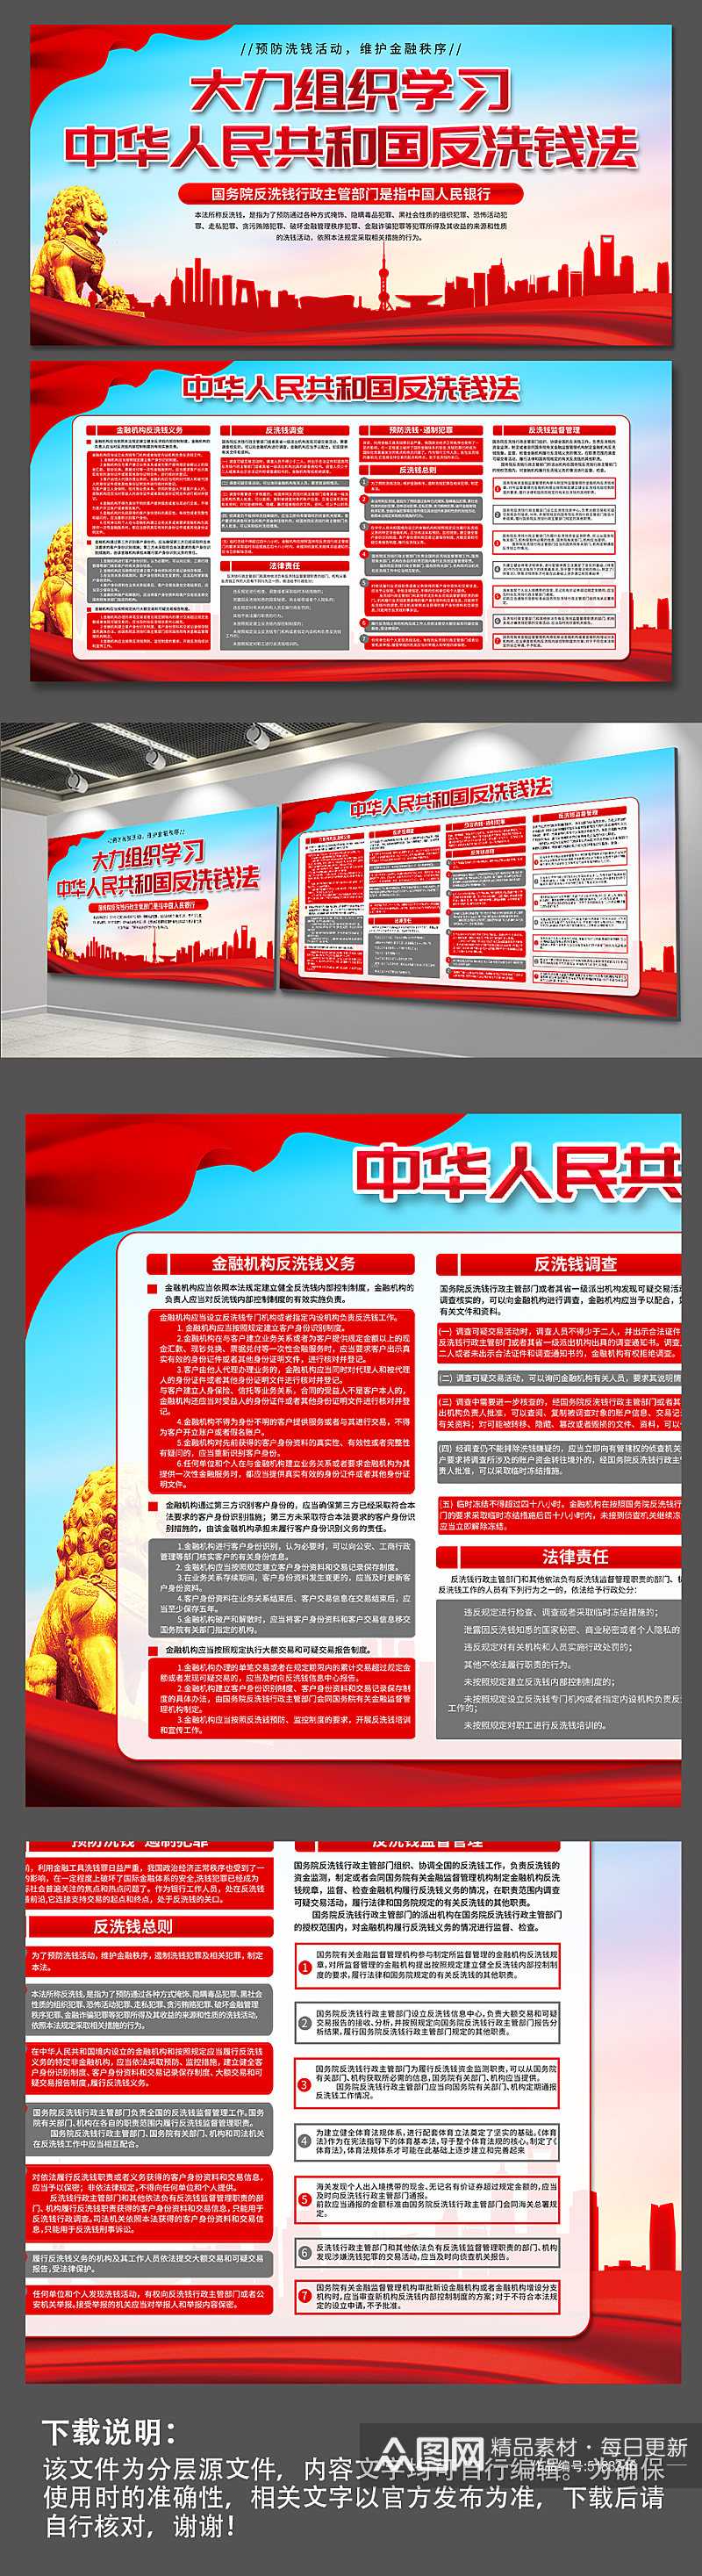 蓝色中华人民共和国反洗钱法党建展板素材